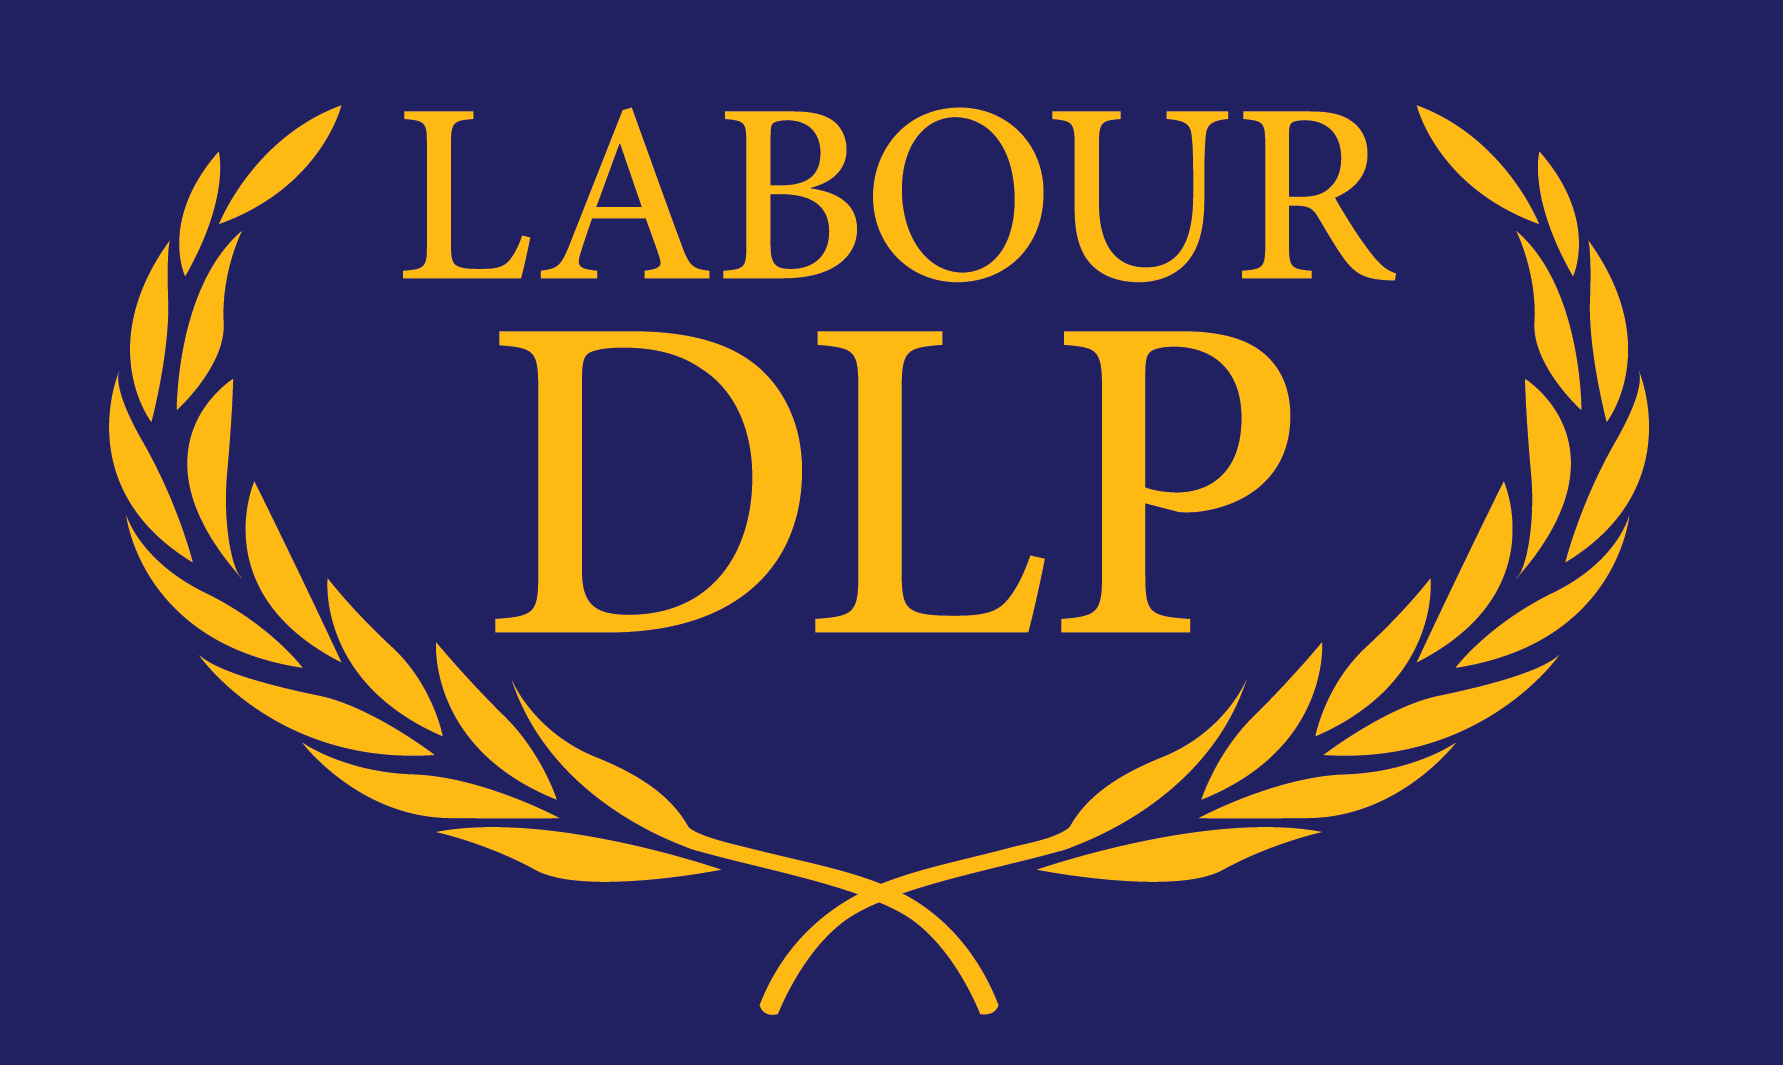 About DLP - Democratic Party